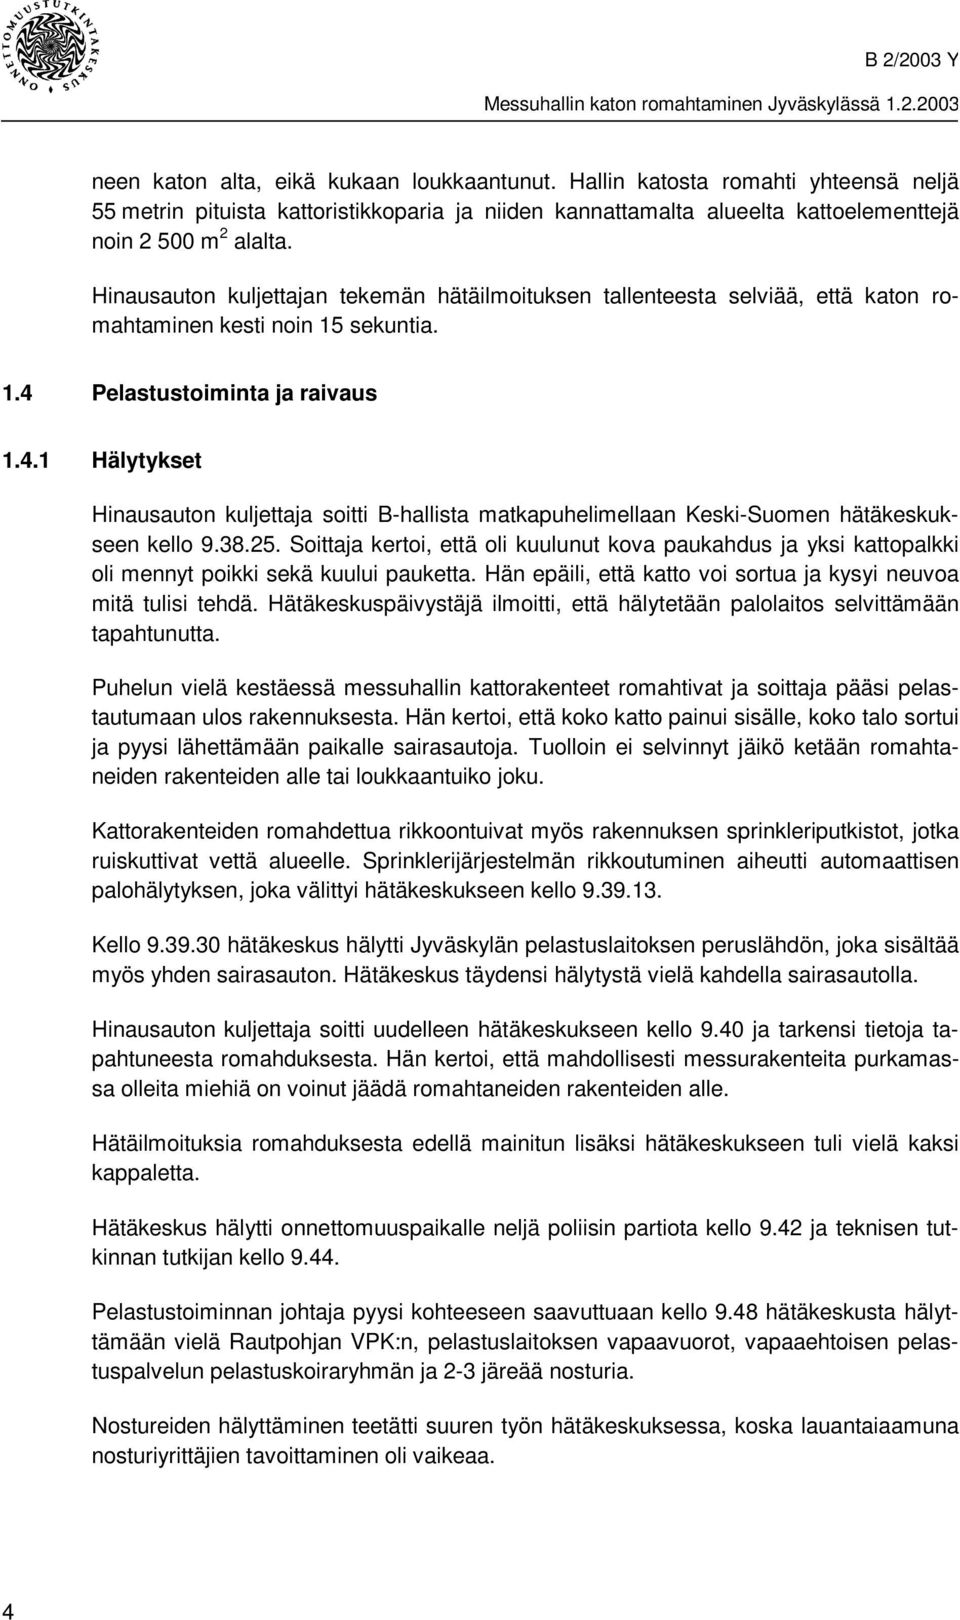 Pelastustoiminta ja raivaus 1.4.1 Hälytykset Hinausauton kuljettaja soitti B-hallista matkapuhelimellaan Keski-Suomen hätäkeskukseen kello 9.38.25.